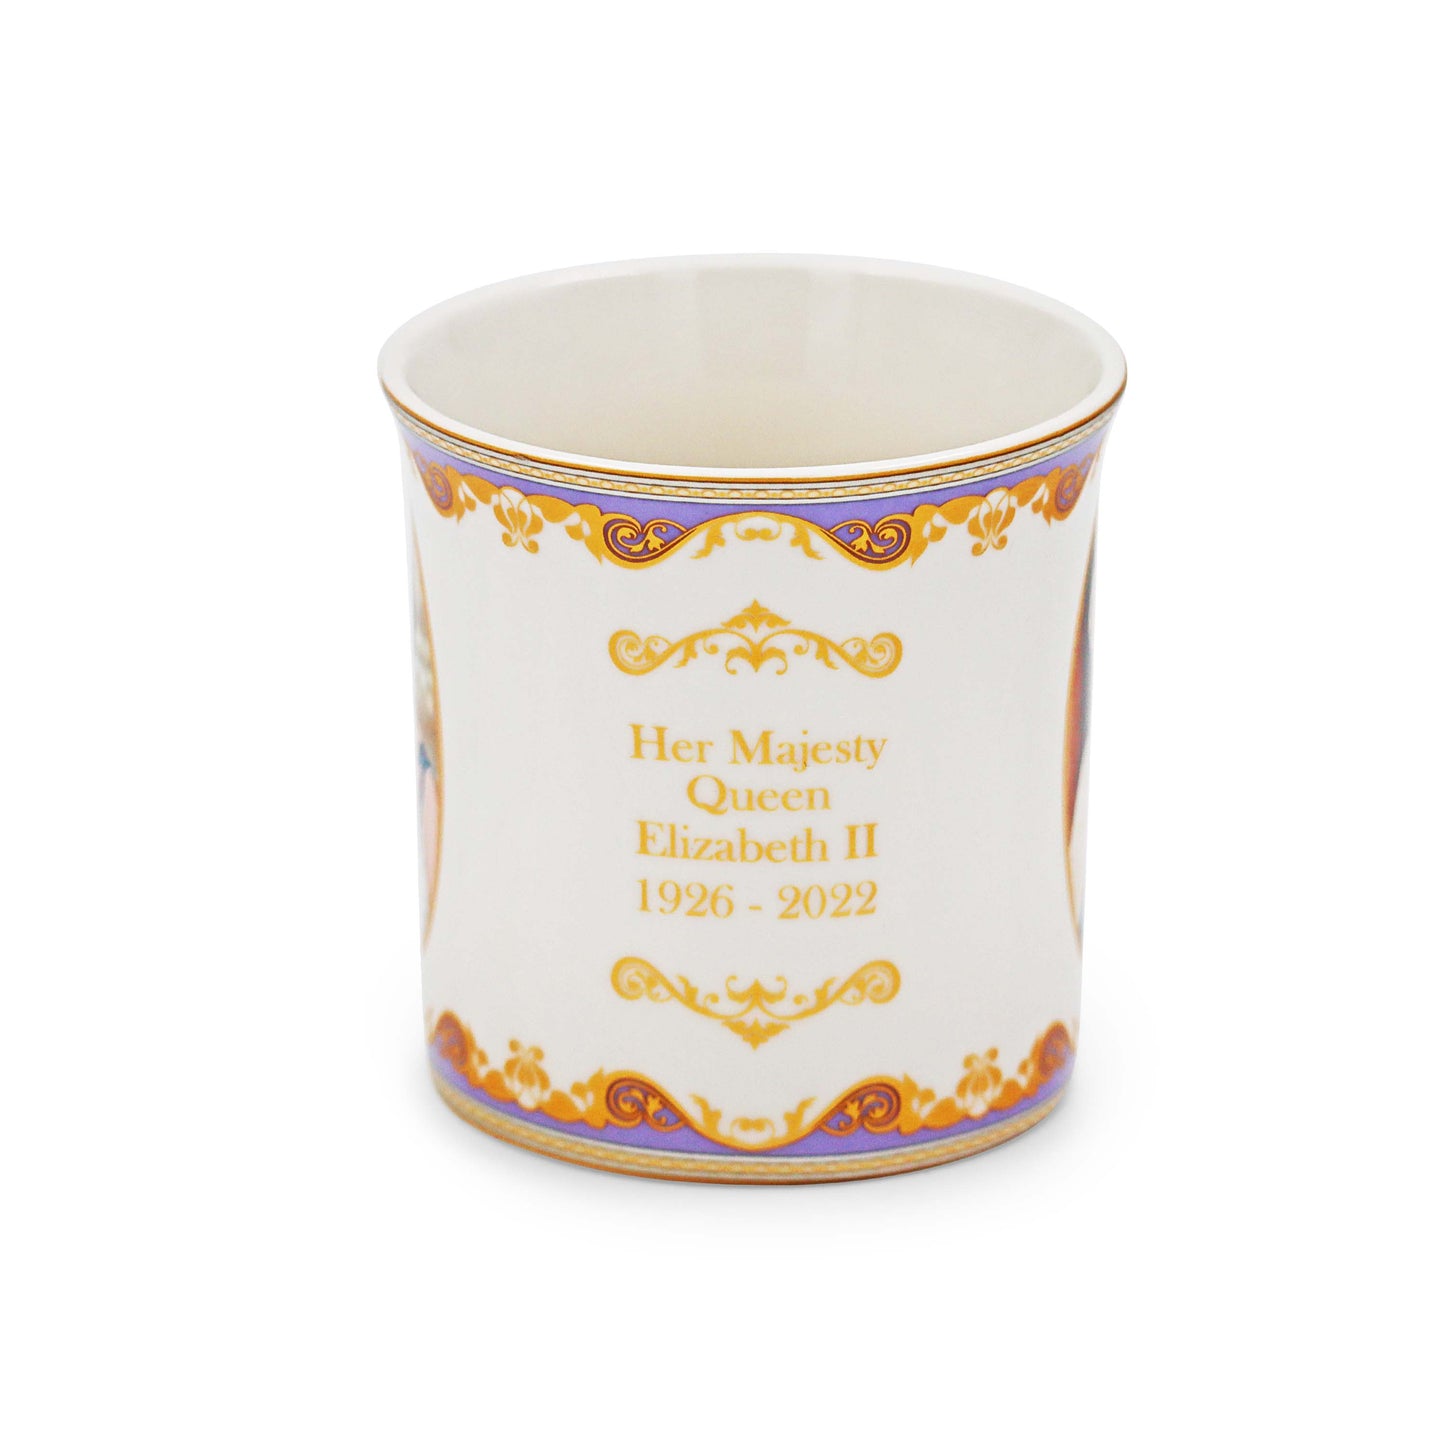 Her Majesty Queen Elizabeth II Commemorative Boxed Mug - HM Queen 1926-2022